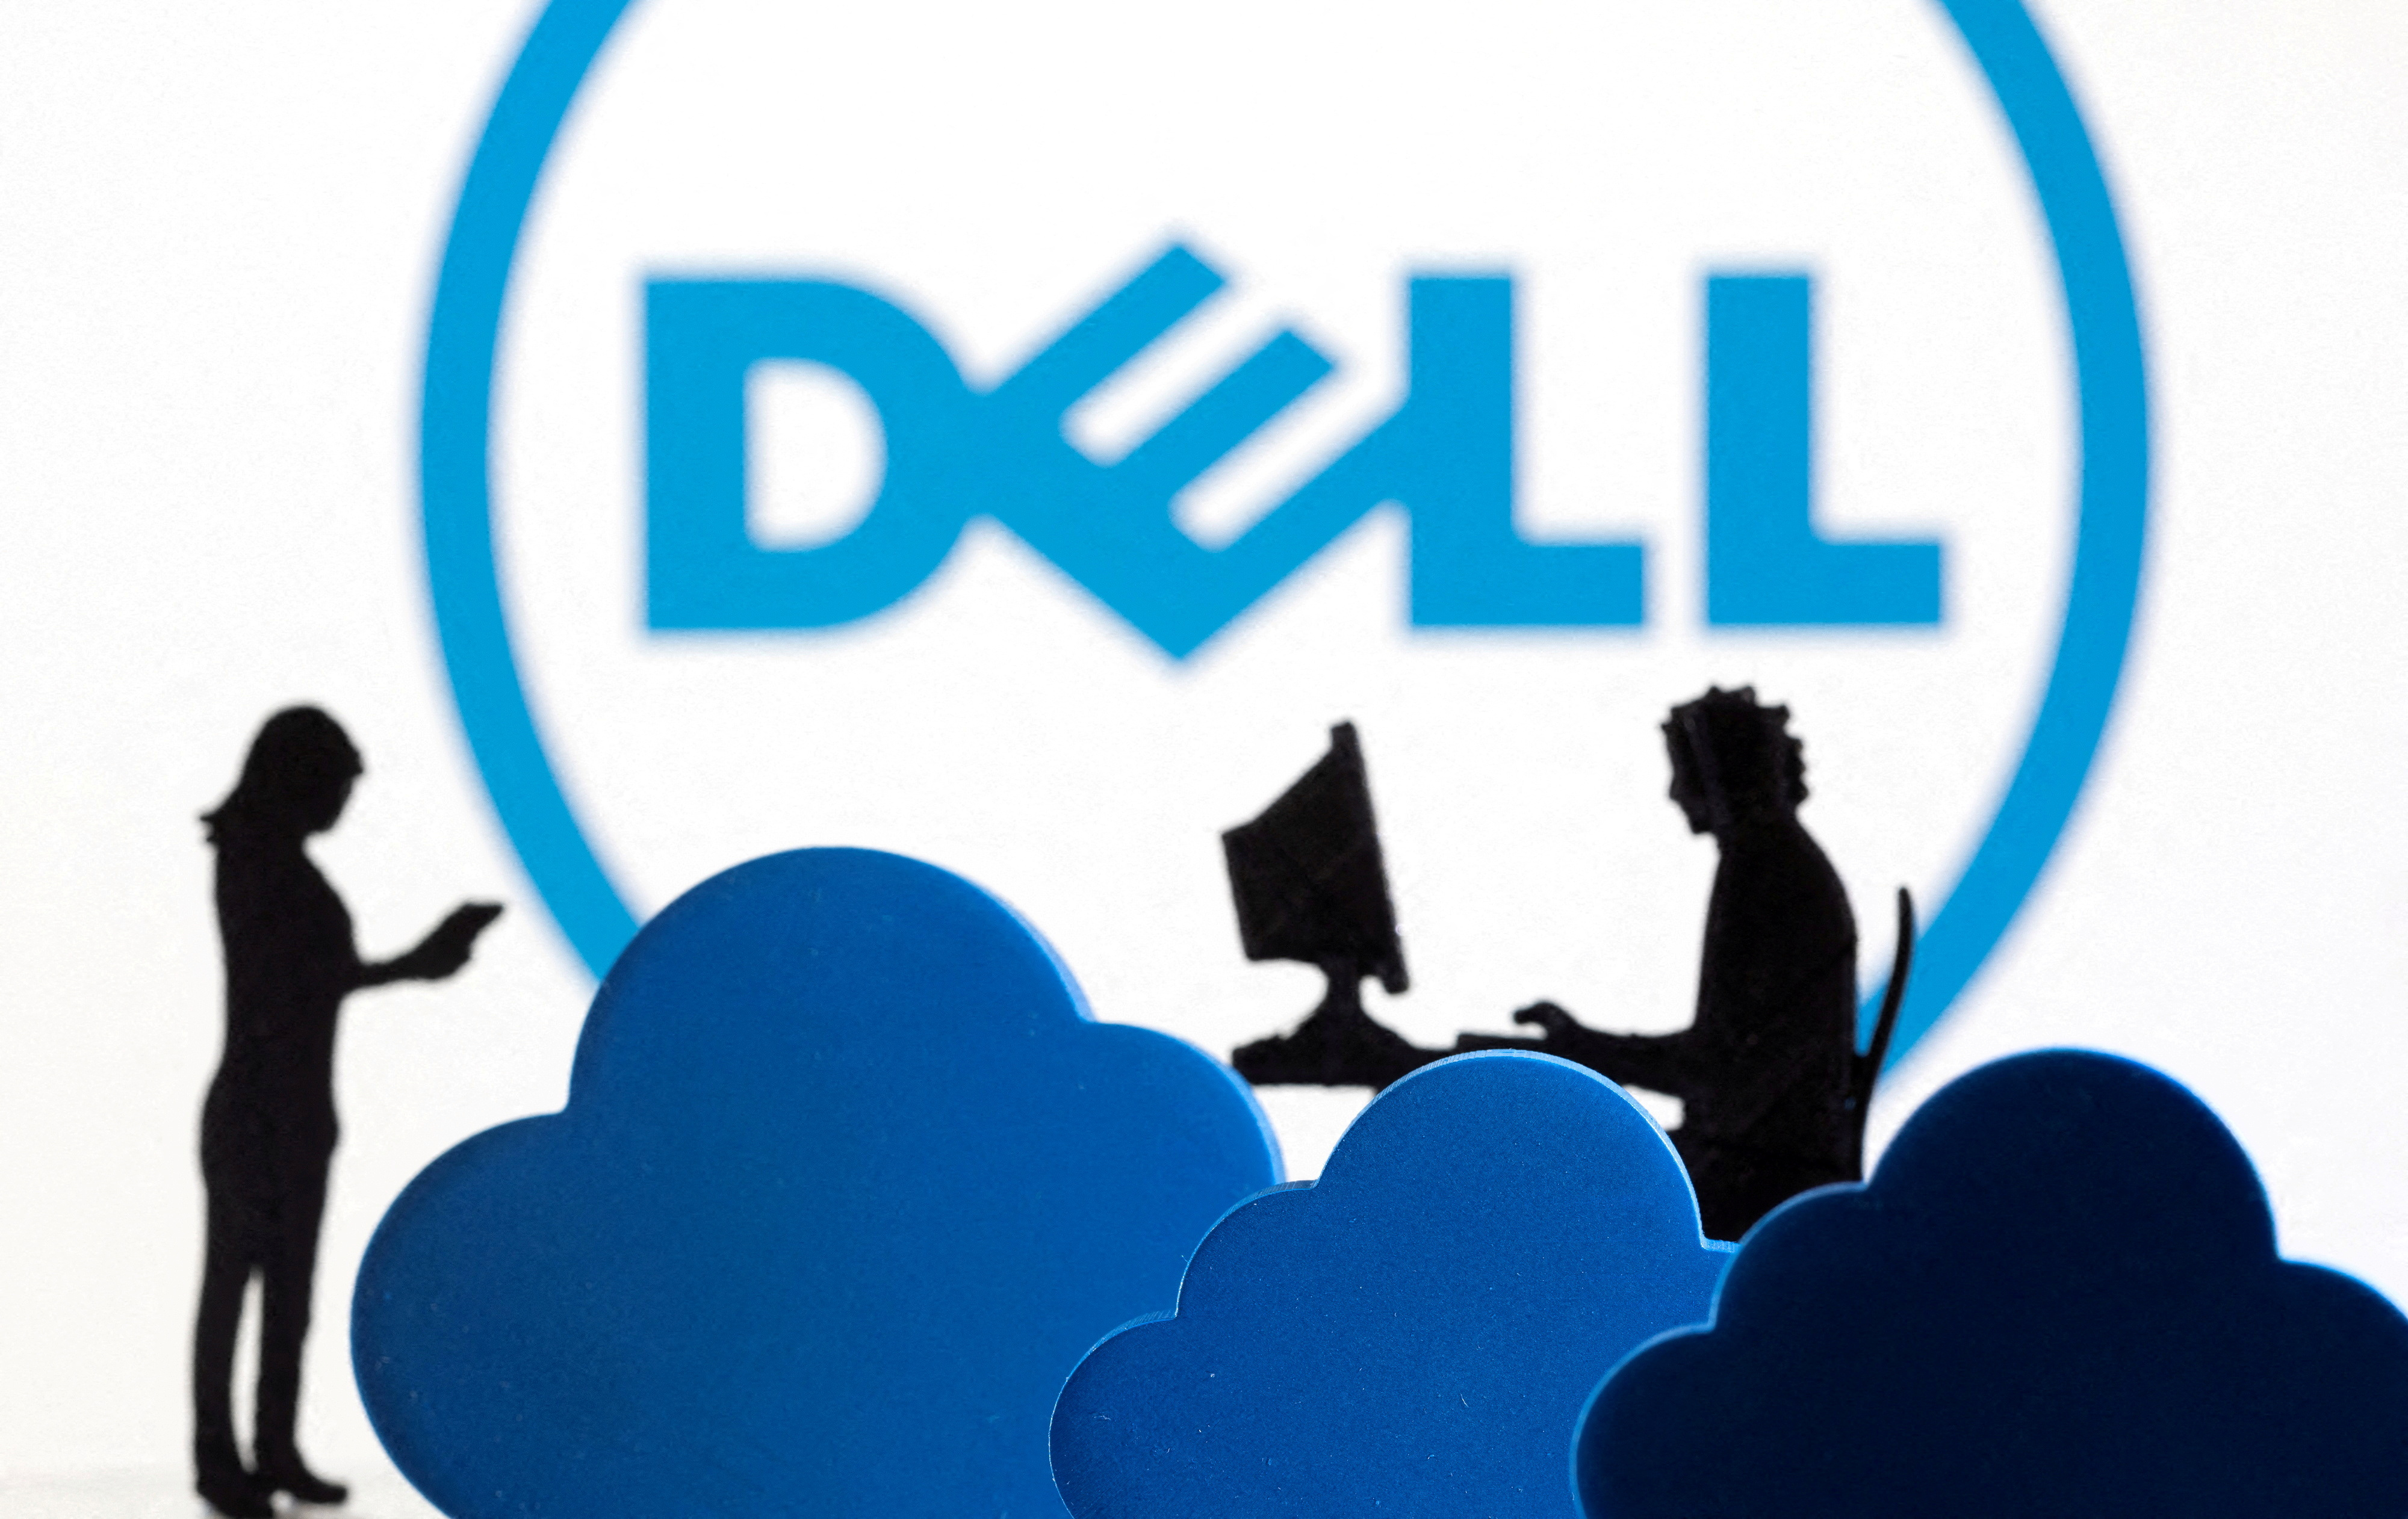 戴尔（Dell）股价15日狂涨逾11%至新高水准，市值突破1,000亿美元大关。路透